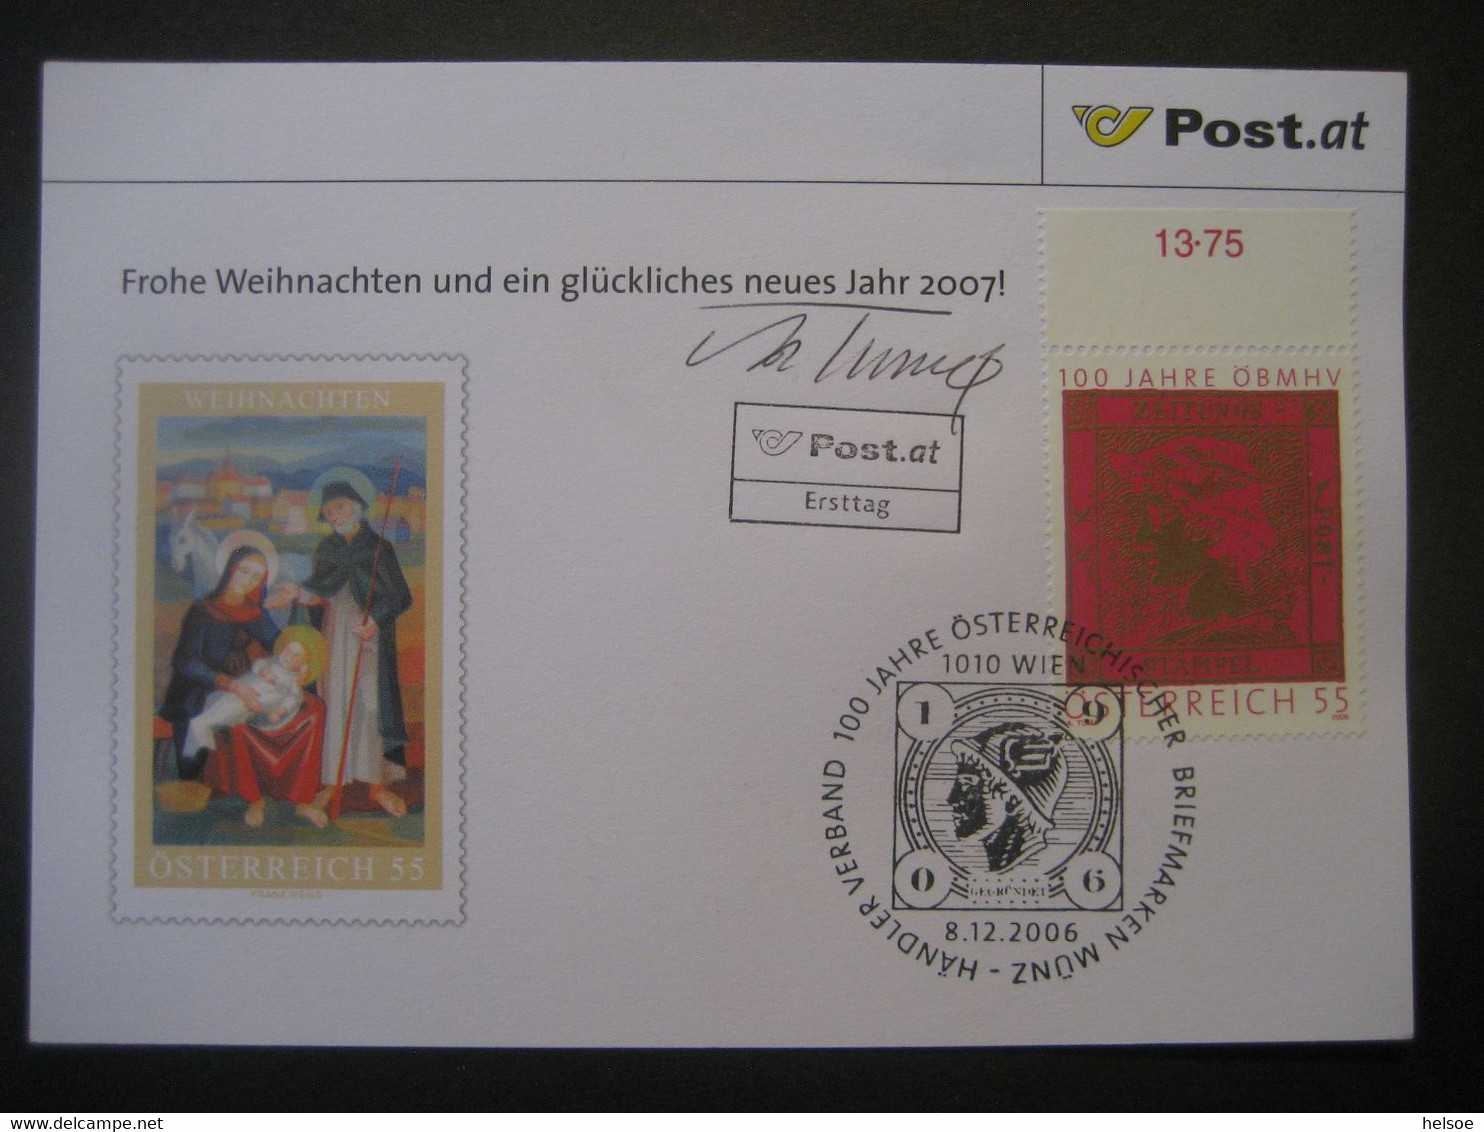 Osterreich- Advent 100 Jahre ÖBMSV, FDC Mit Autogramm Von Adolf Tuma - Briefe U. Dokumente